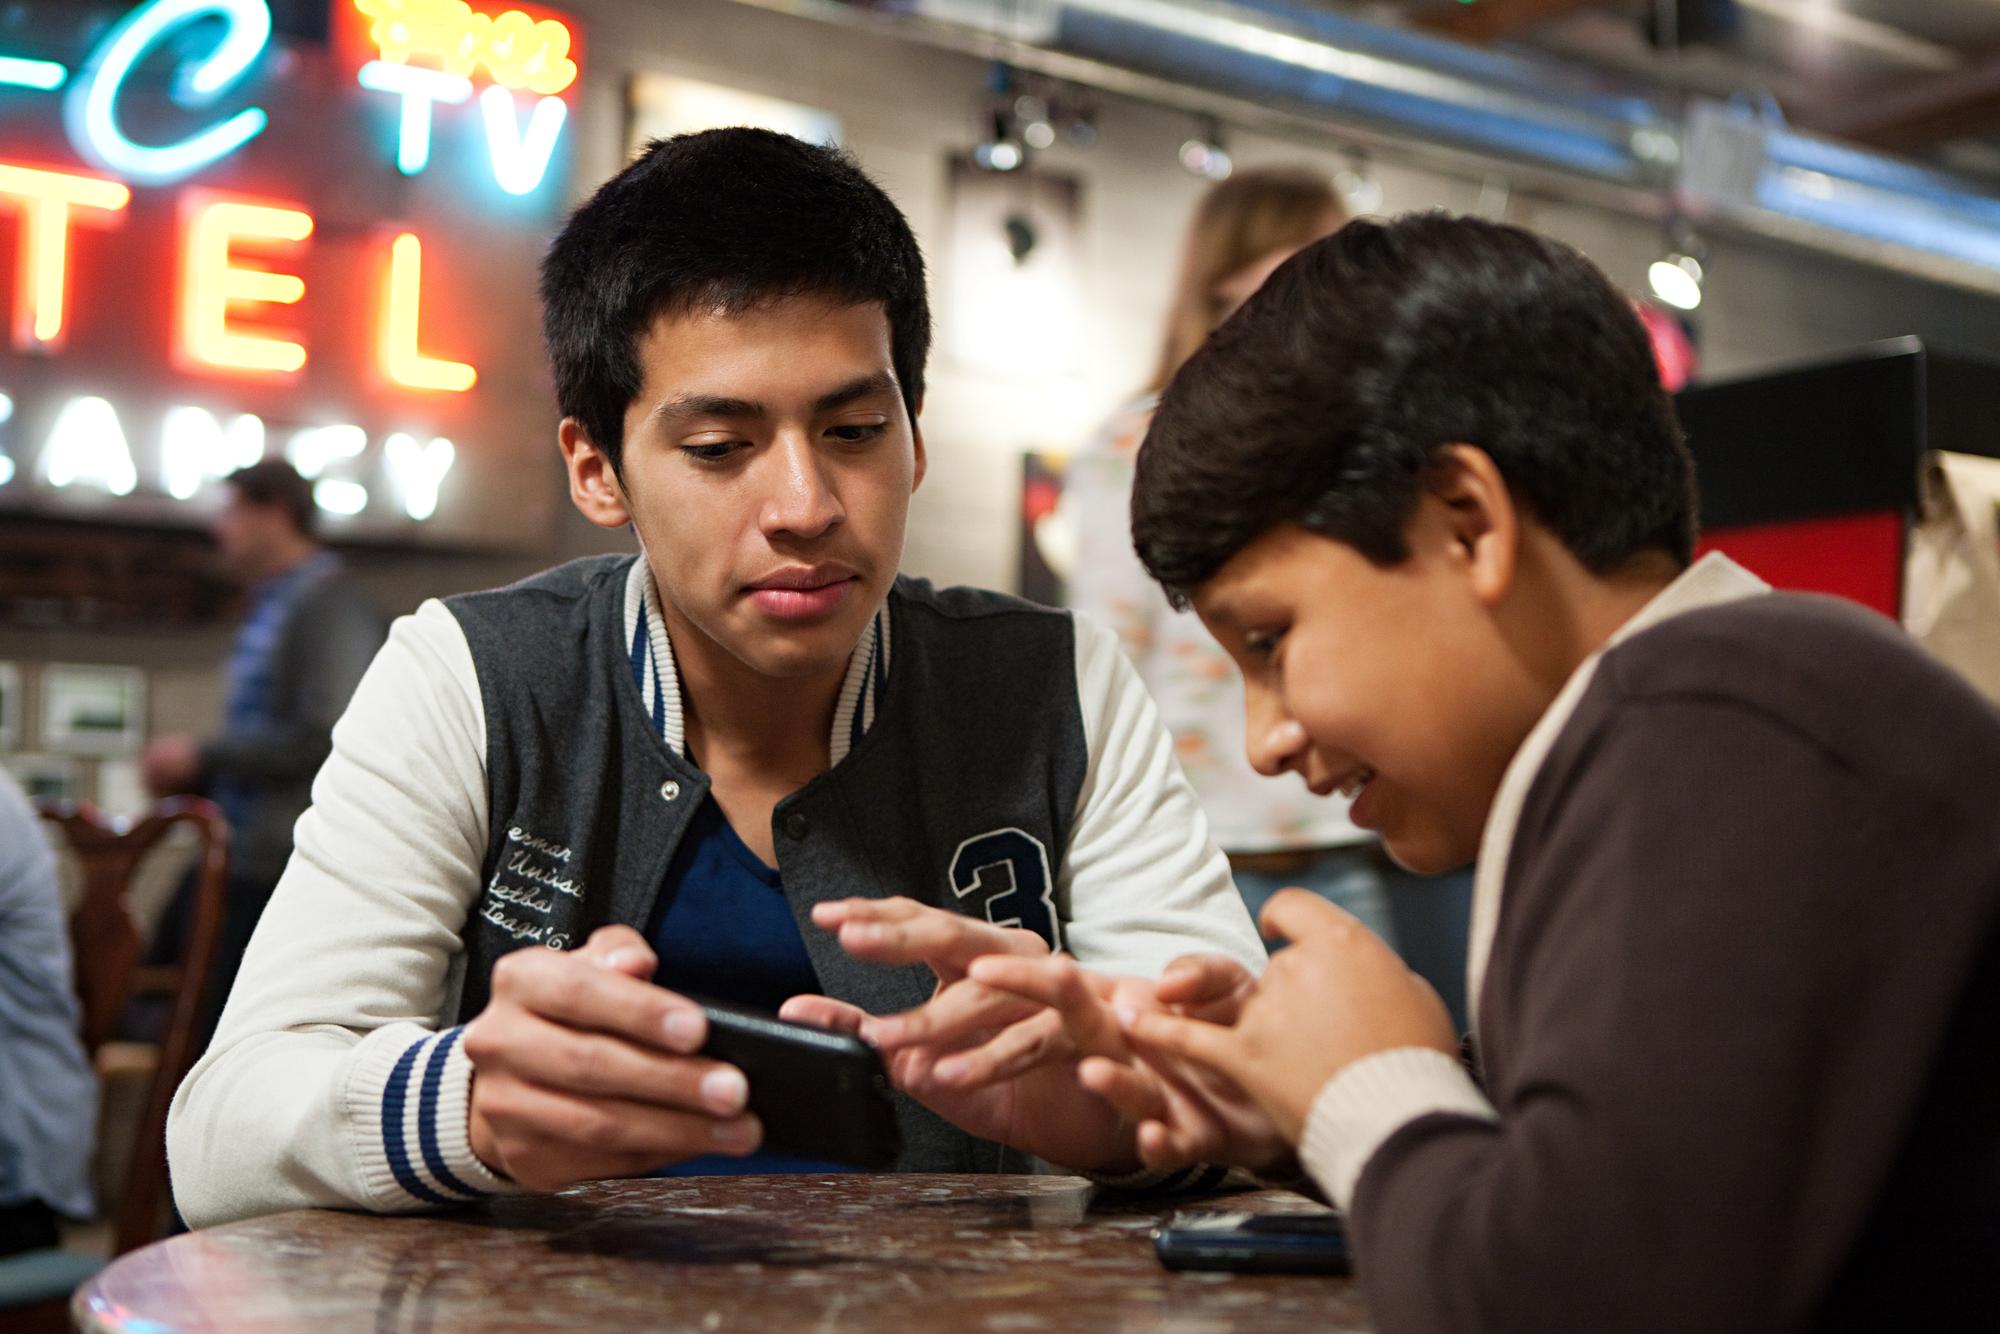 Les jeunes consomment de plus en plus d'informations avec leur smartphone. [Sean Murphy]